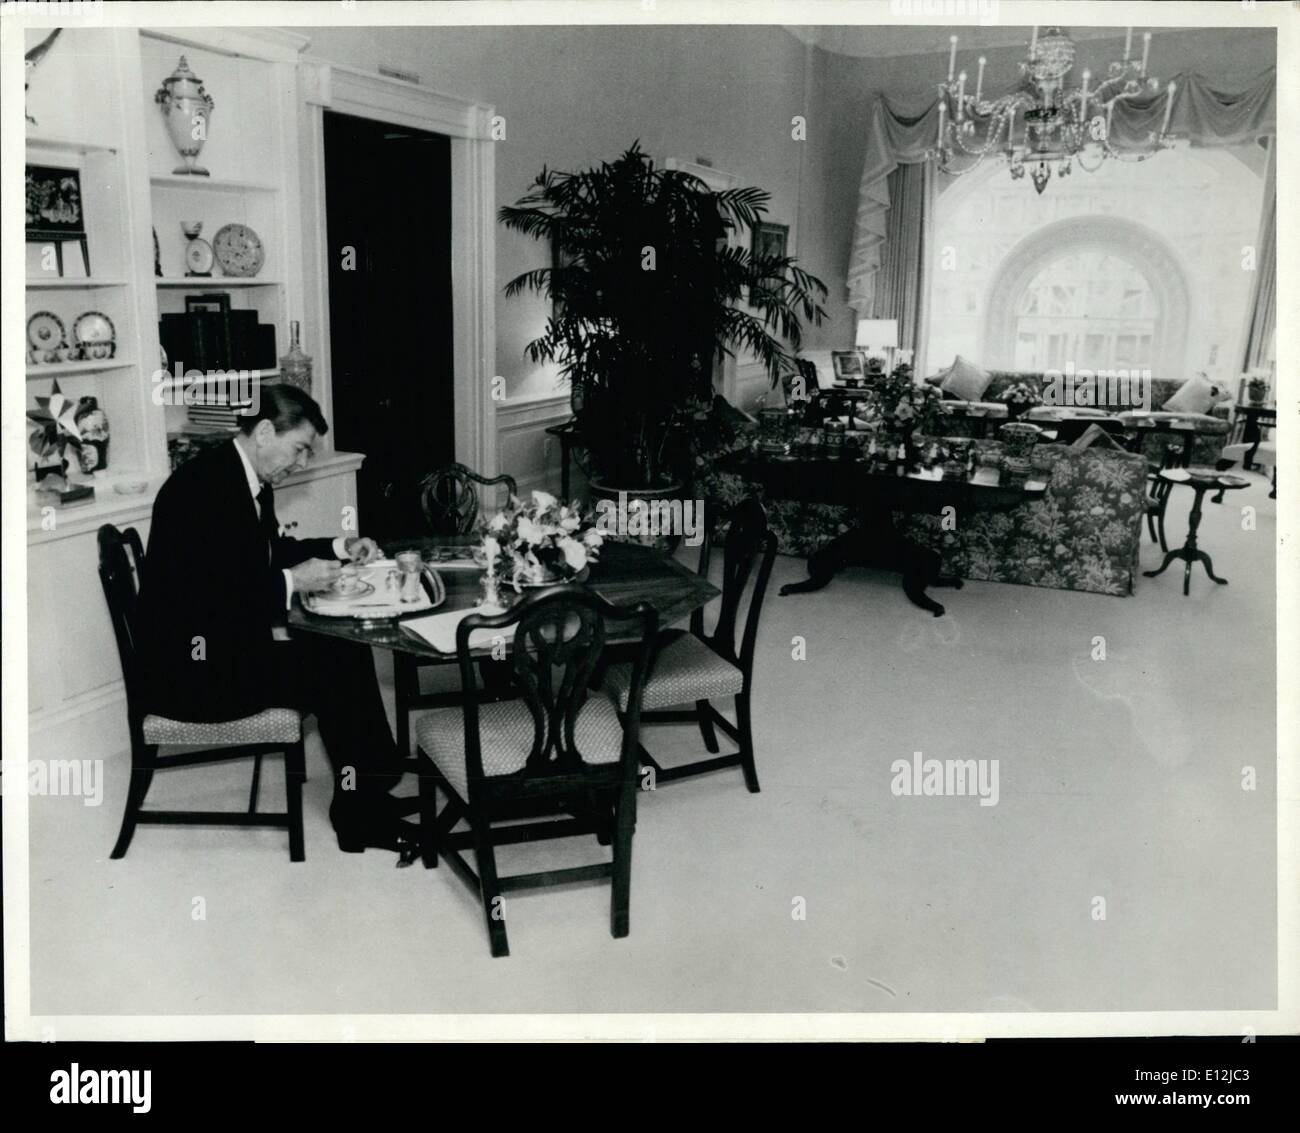 Febbraio 24, 2012 - Consolidato news foto.: Reagan mangia pranzo: Washington D.C. Presidente Raegan è mostrato nel Residence soggiorno pranzo. Queste immagini sono state rilasciate dalla casa bianca nel novembre 18th. Foto Stock